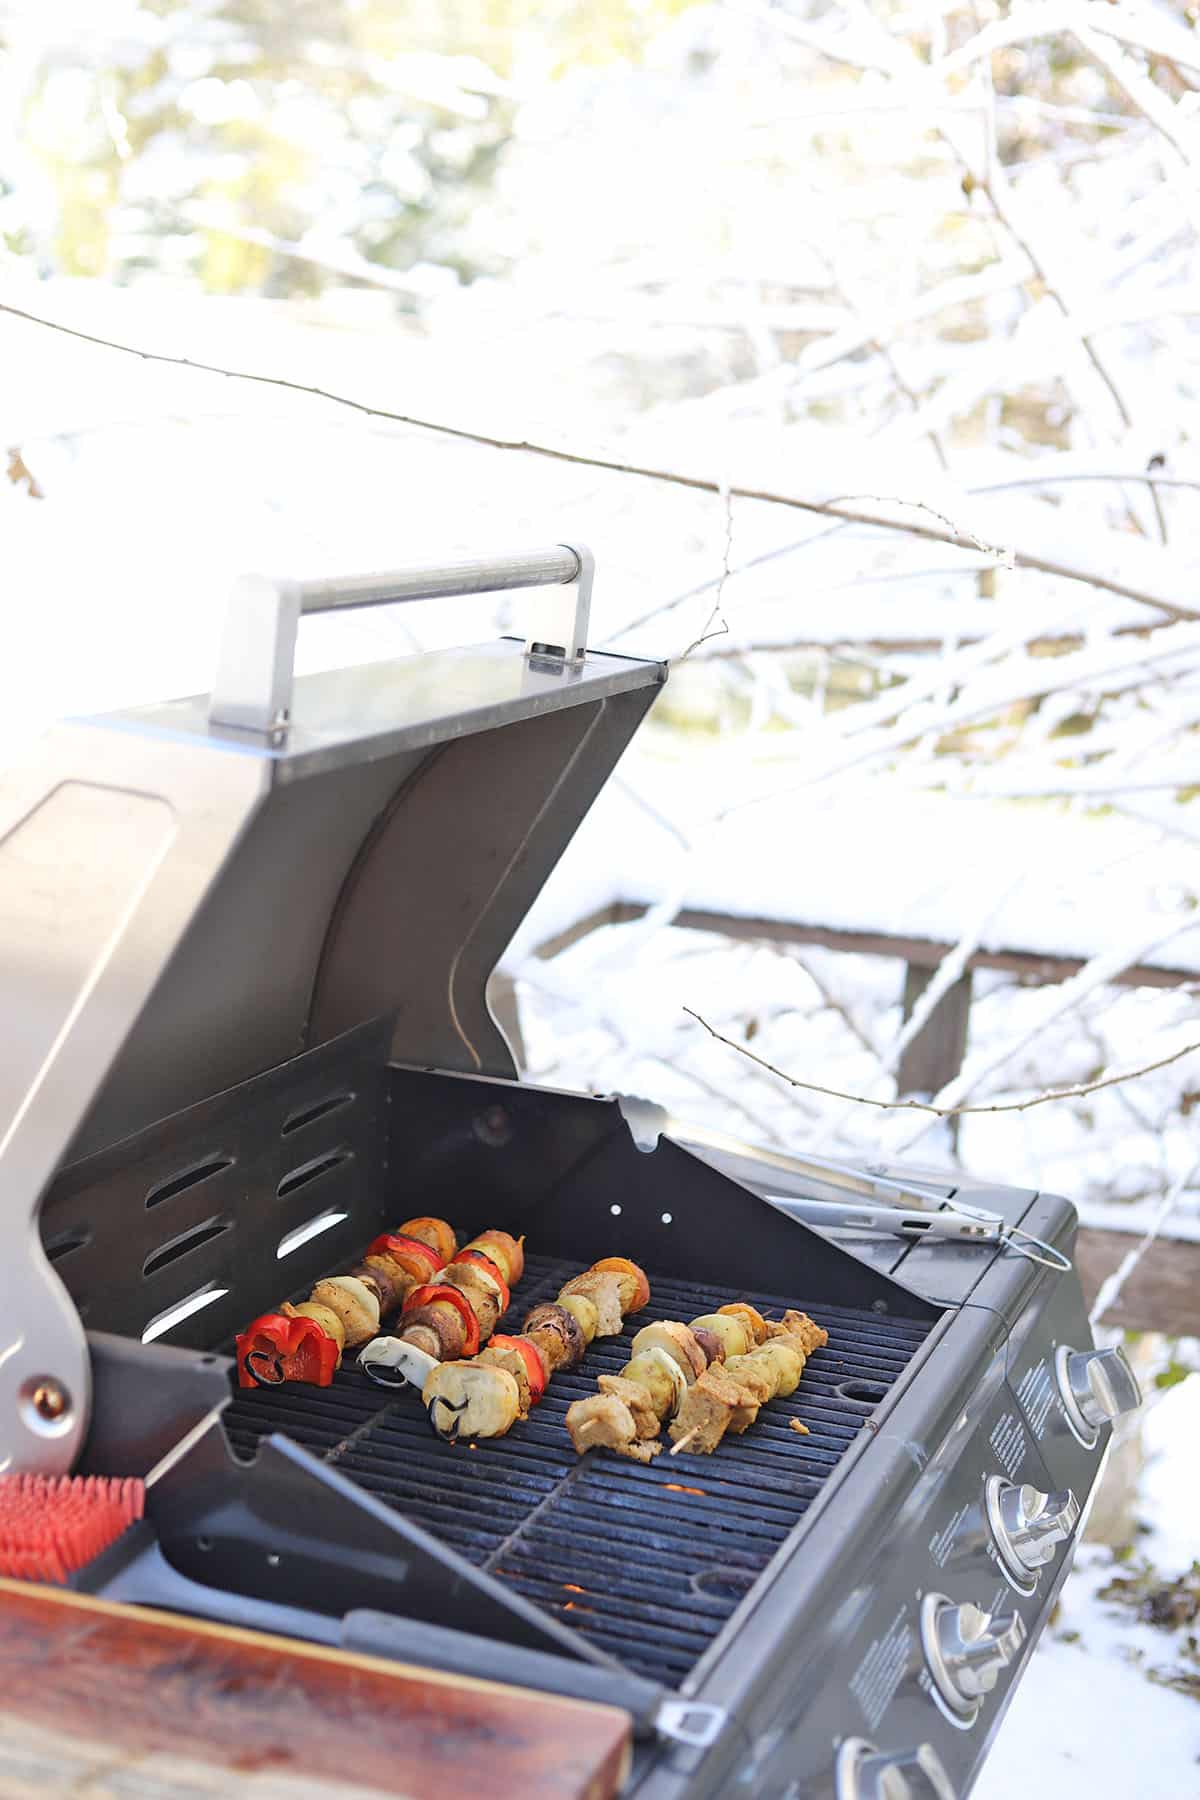 Vegan skewers on outdoor grill.